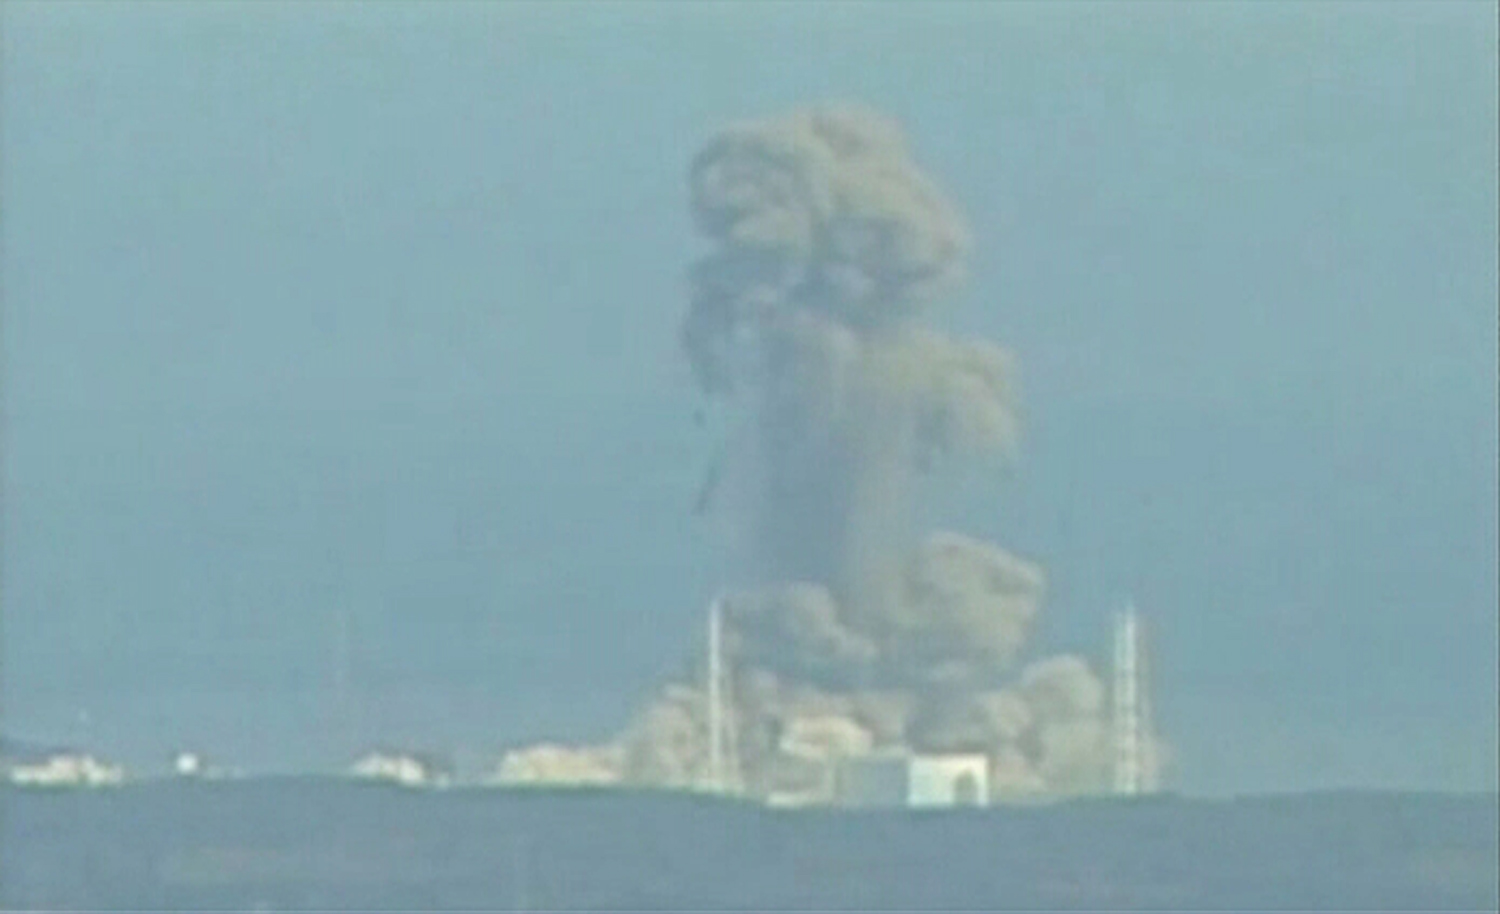 Άσπρος καπνός βγαίνεια από τον αντιδραστήρα Νο3 του πυρηνικού εργοστασίου Φουκουσίμα. ΦΩΤΟ REUTERS